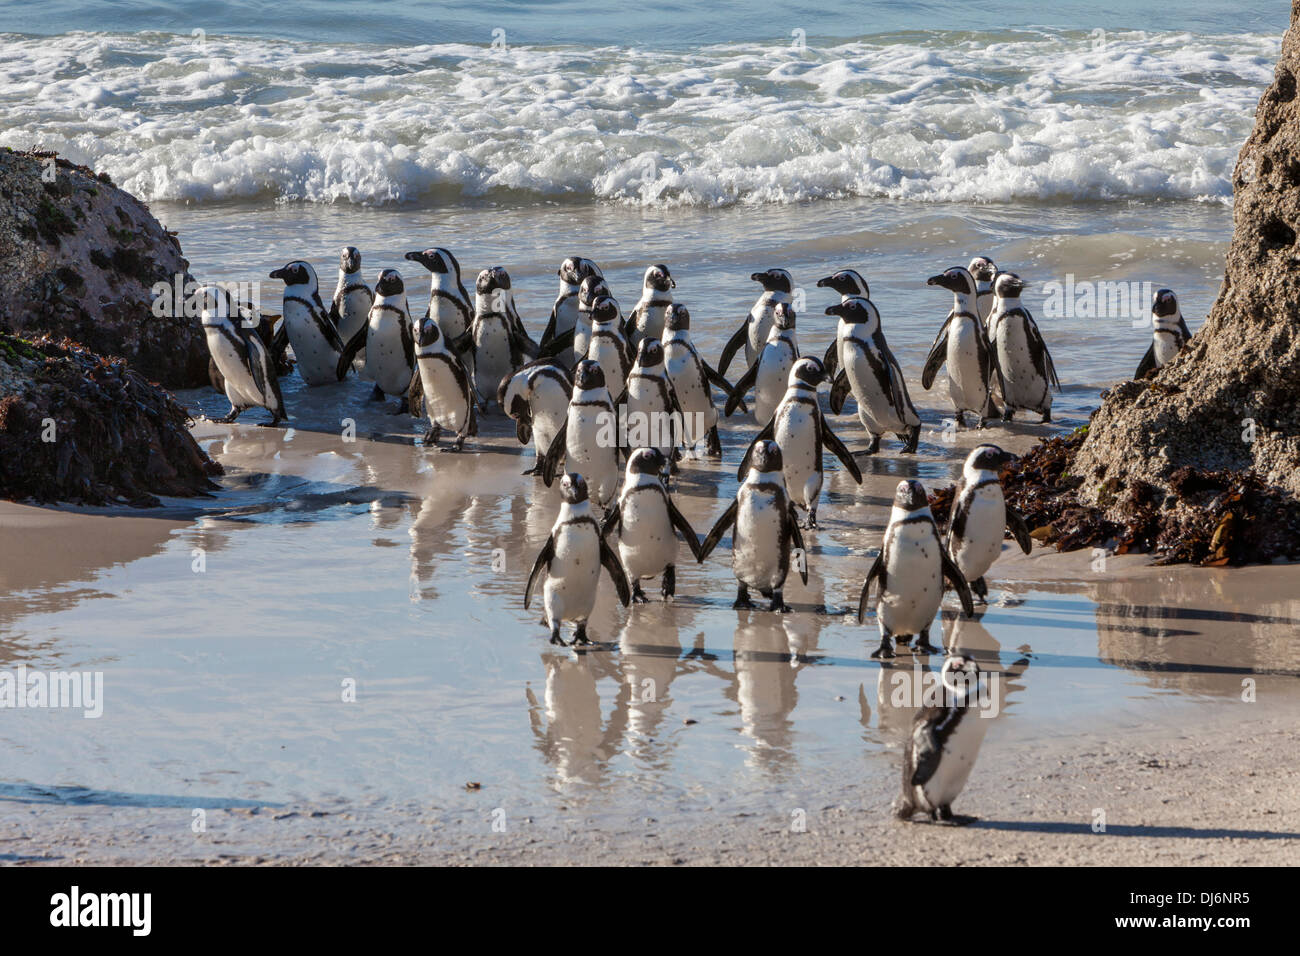 Südafrika. Afrikanische Pinguine am Boulders Beach in der Nähe von Simons Town, Western Cape Provinz. Stockfoto